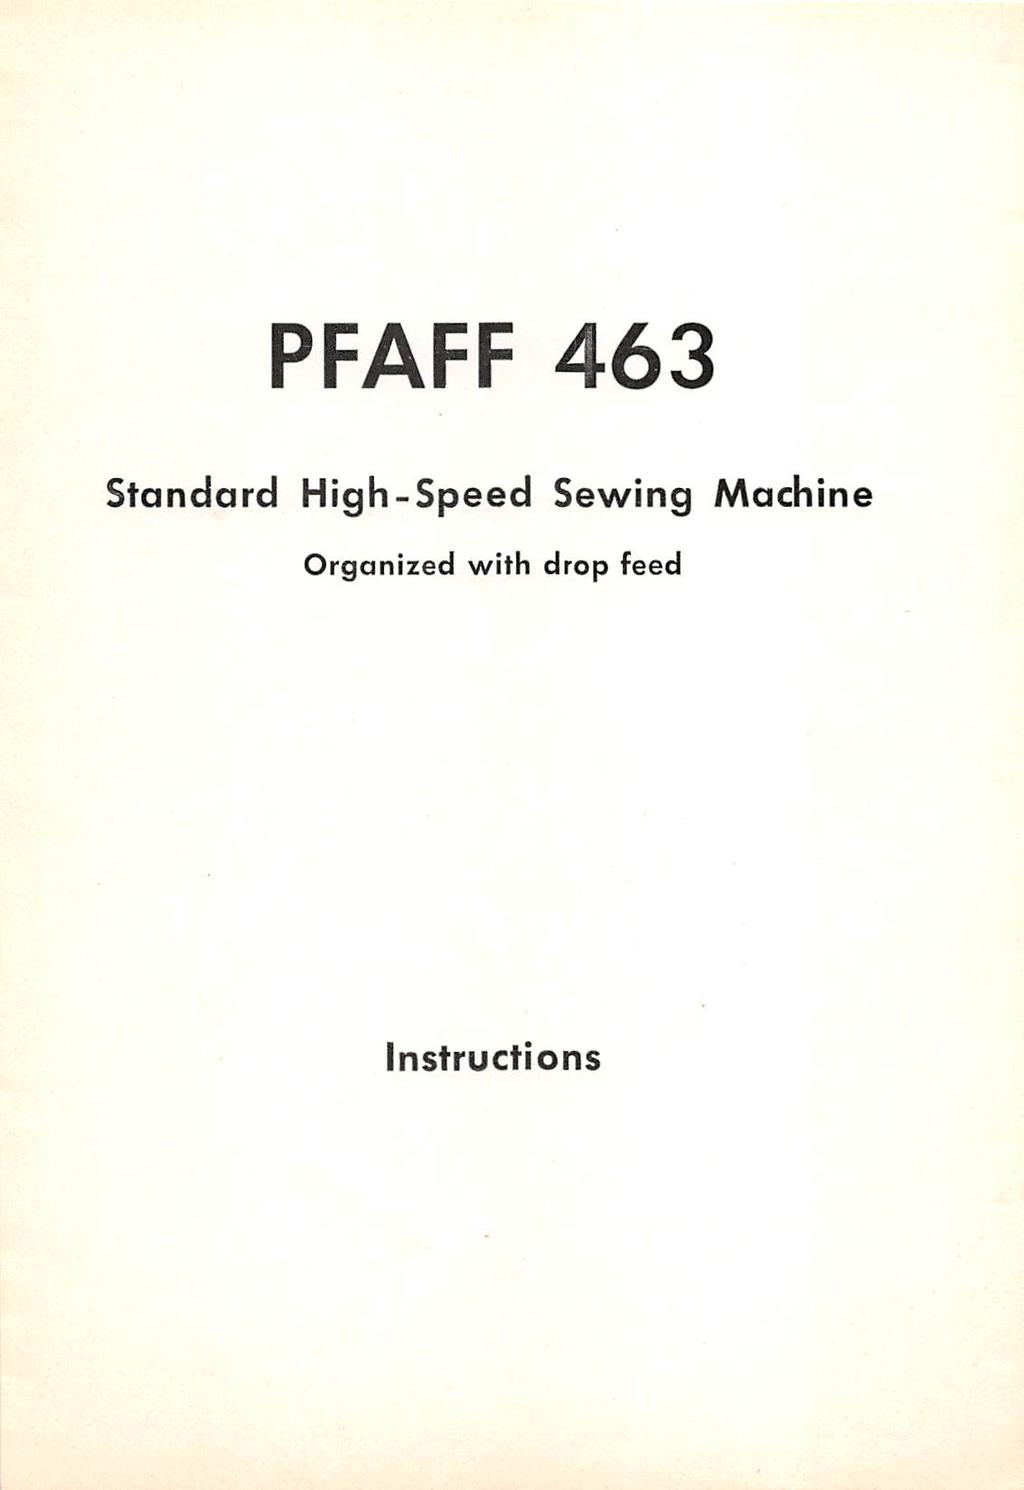 PFAFF 463 Standard High-Speed Sewing